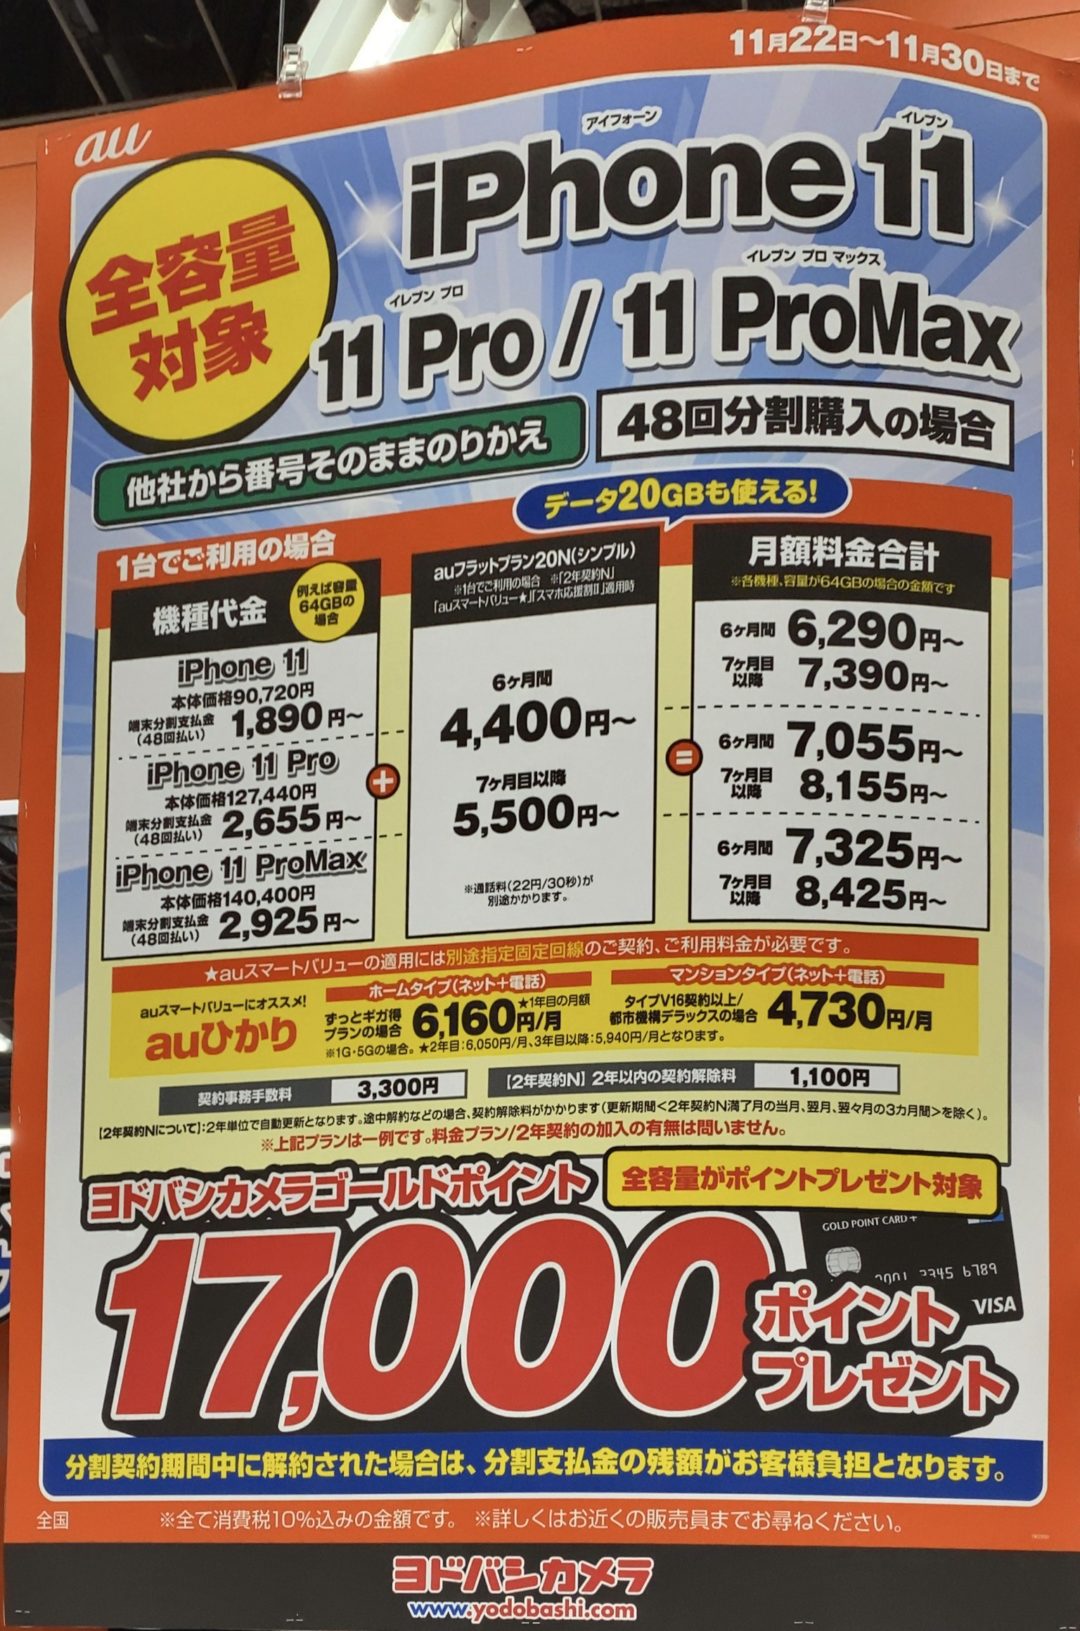 ヨドバシカメラでauのiphone 11 11 Pro 11 Pro Max全容量がmnpで分割購入で17 000円還元 11 30 土 まで